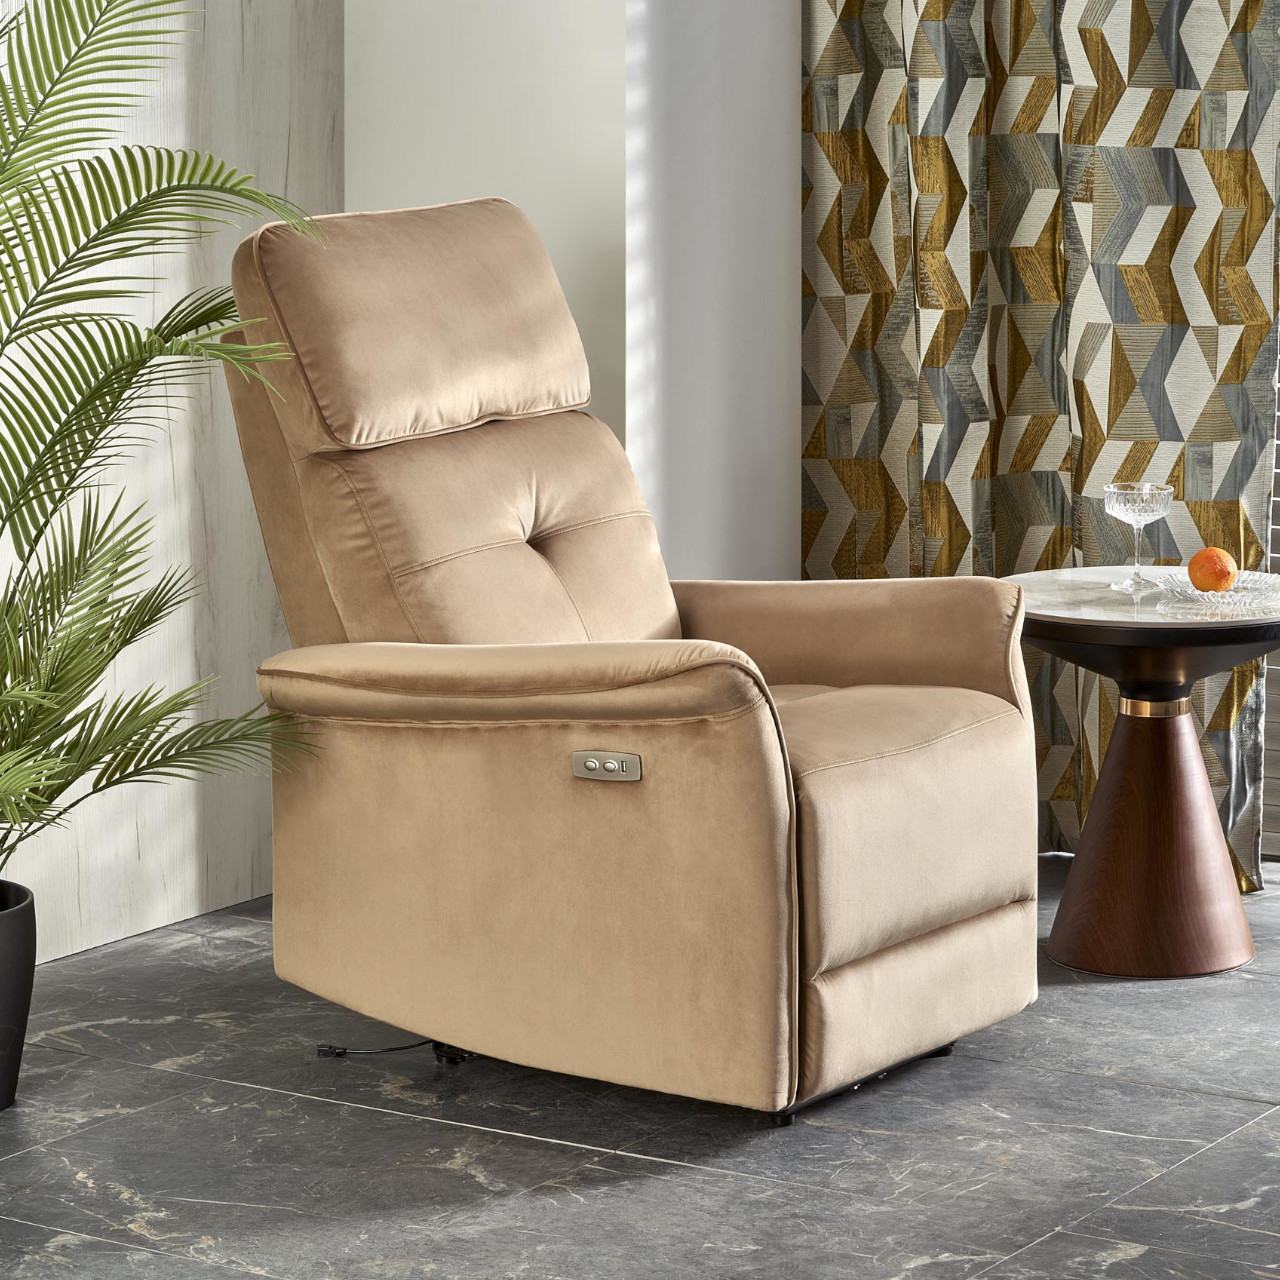 Recliner armchair SAFIR beige